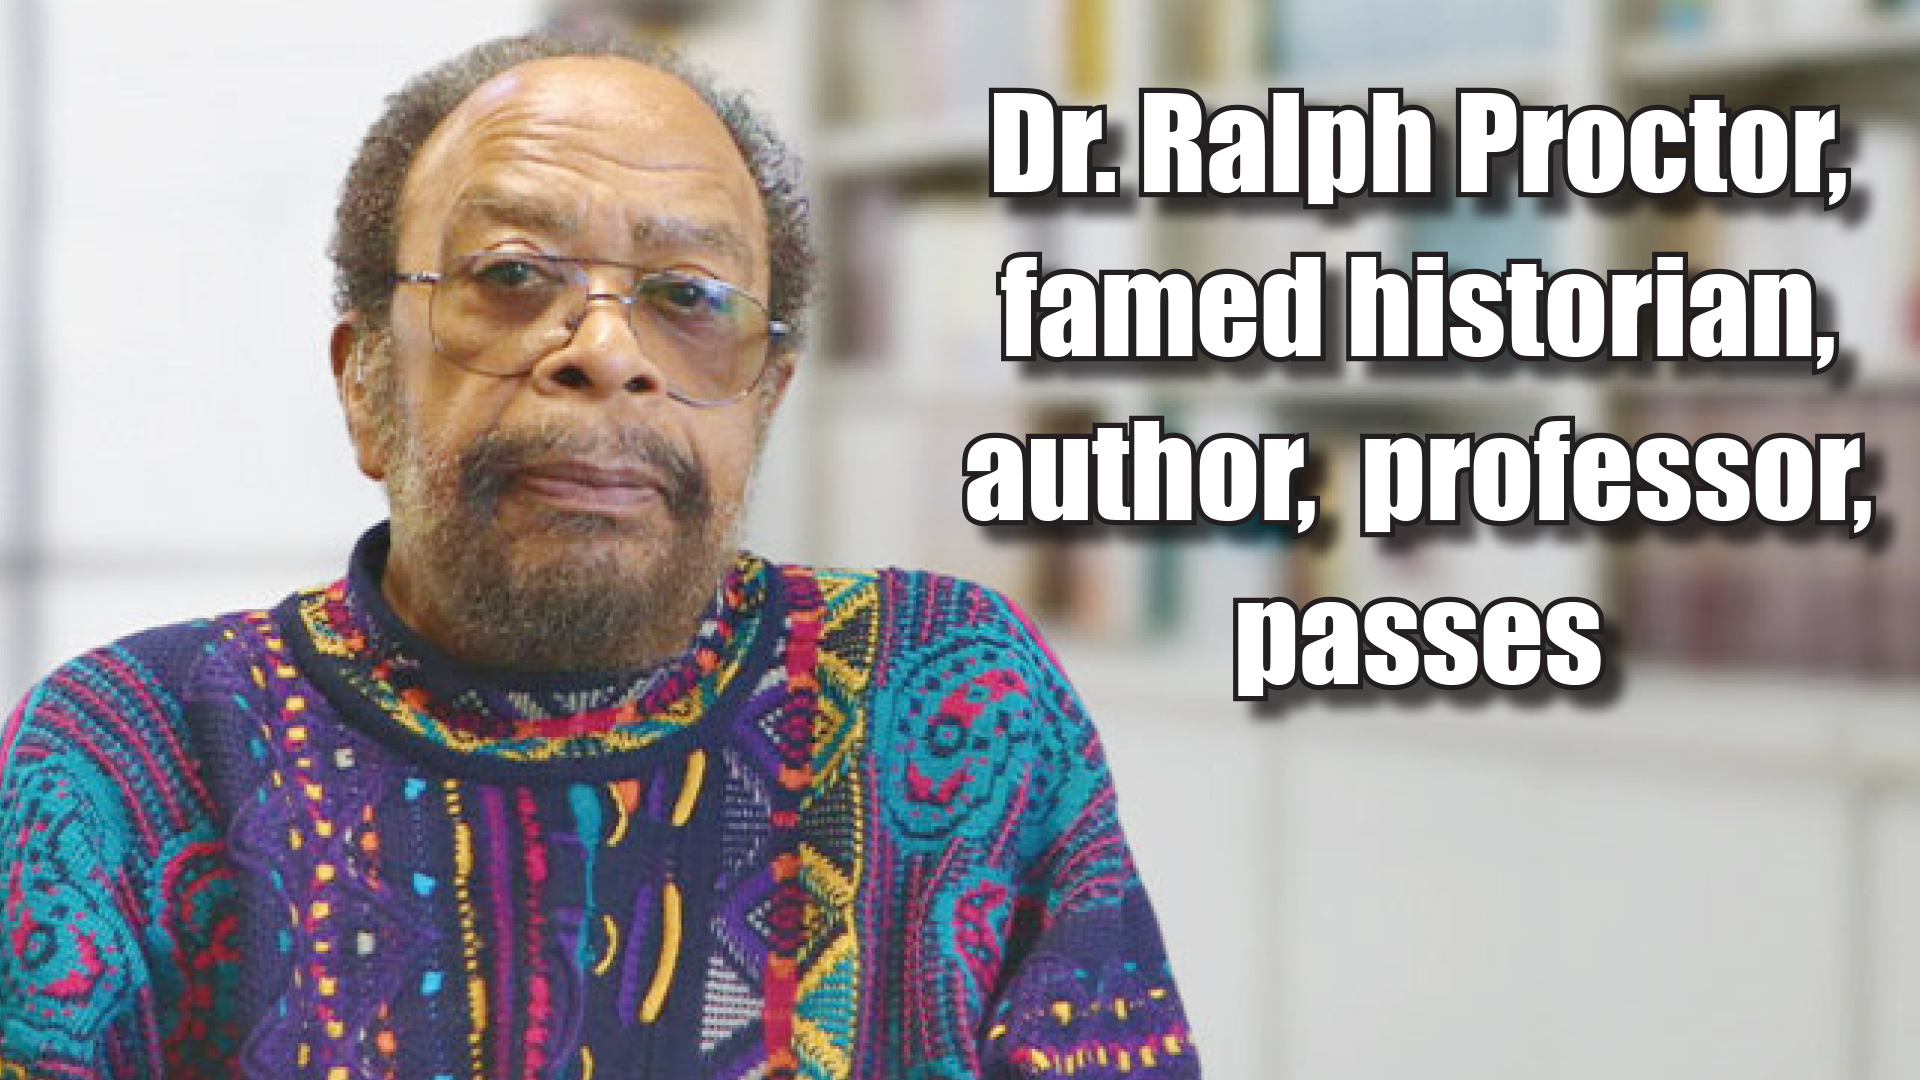 著名历史学家、作家、教授拉尔夫·普罗克特博士逝世